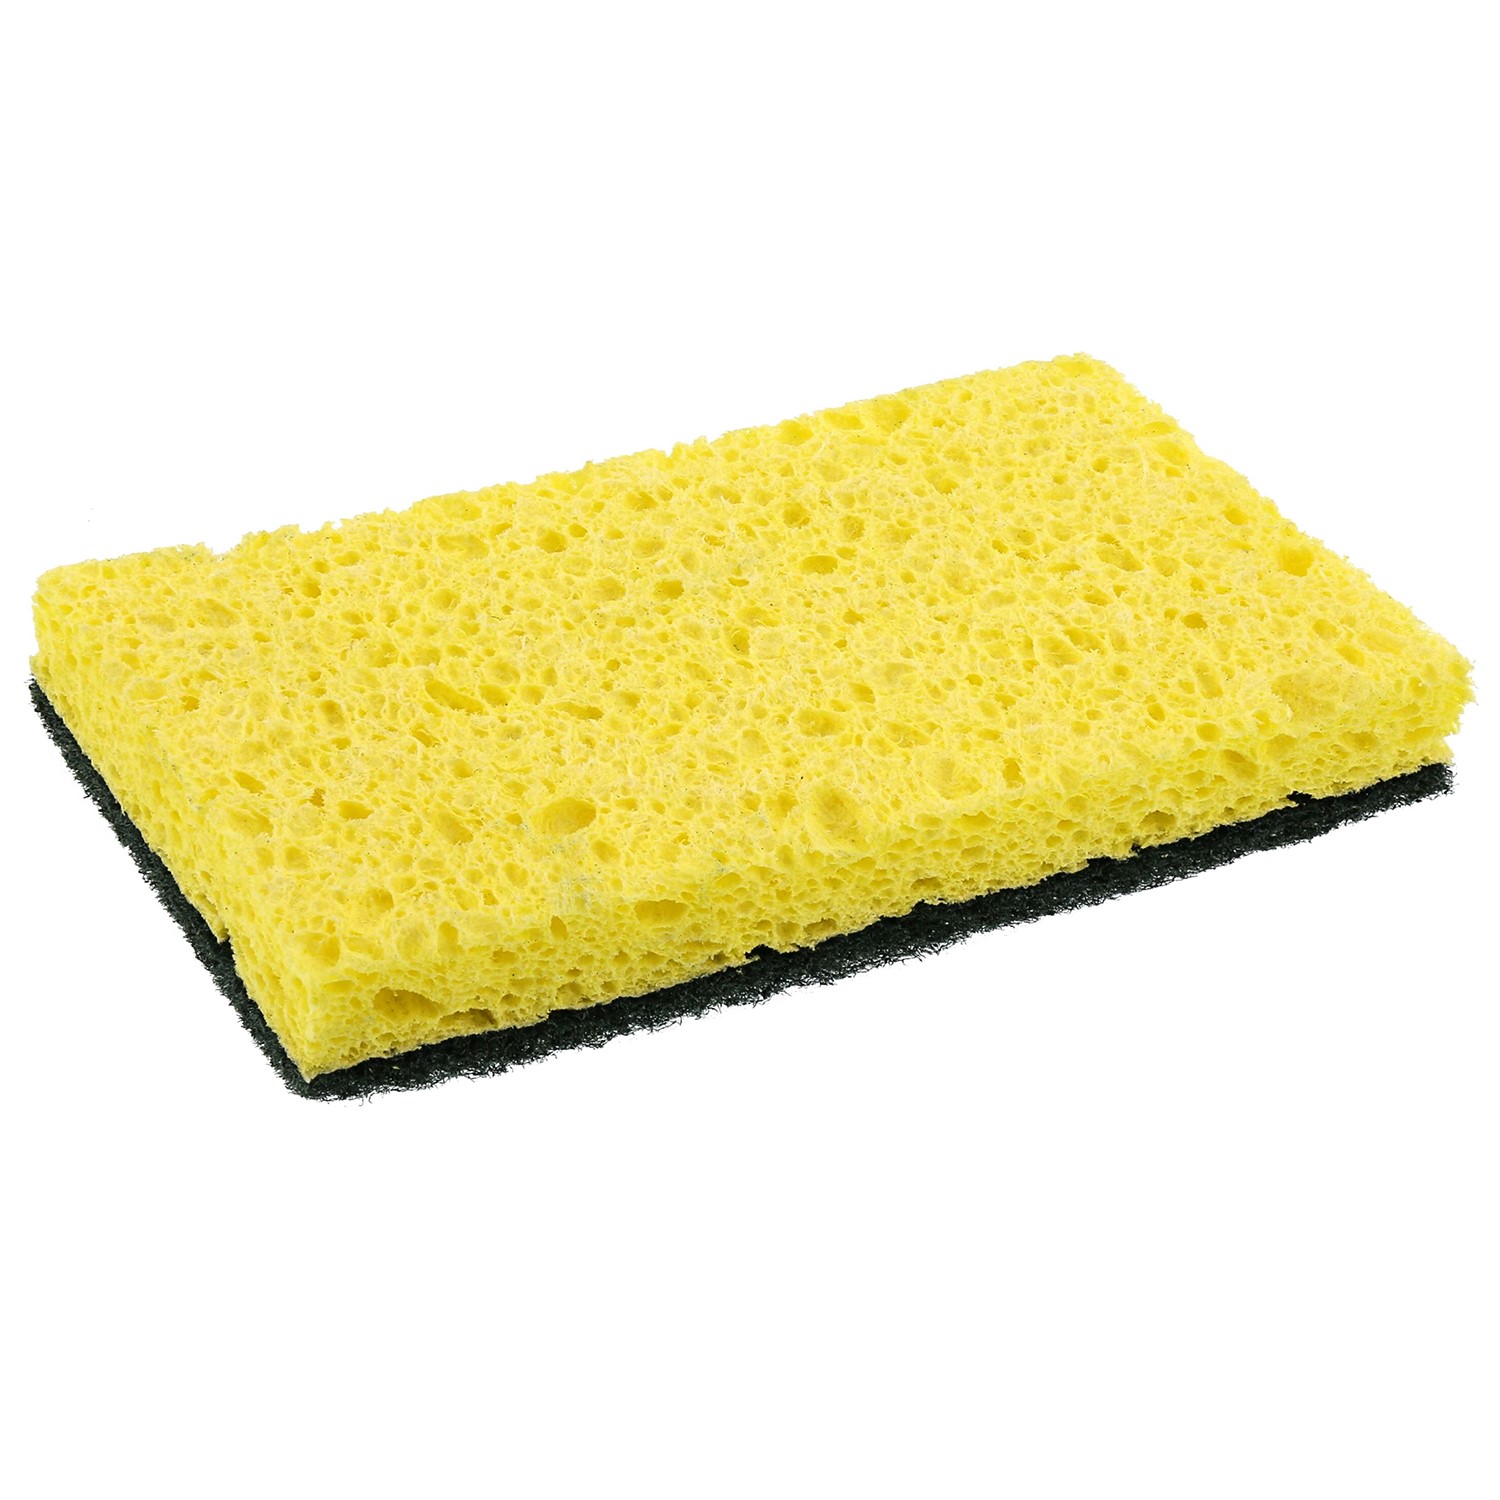 Heavy-Duty Scrubbing Sponge, Yellow/Green, 20/Case